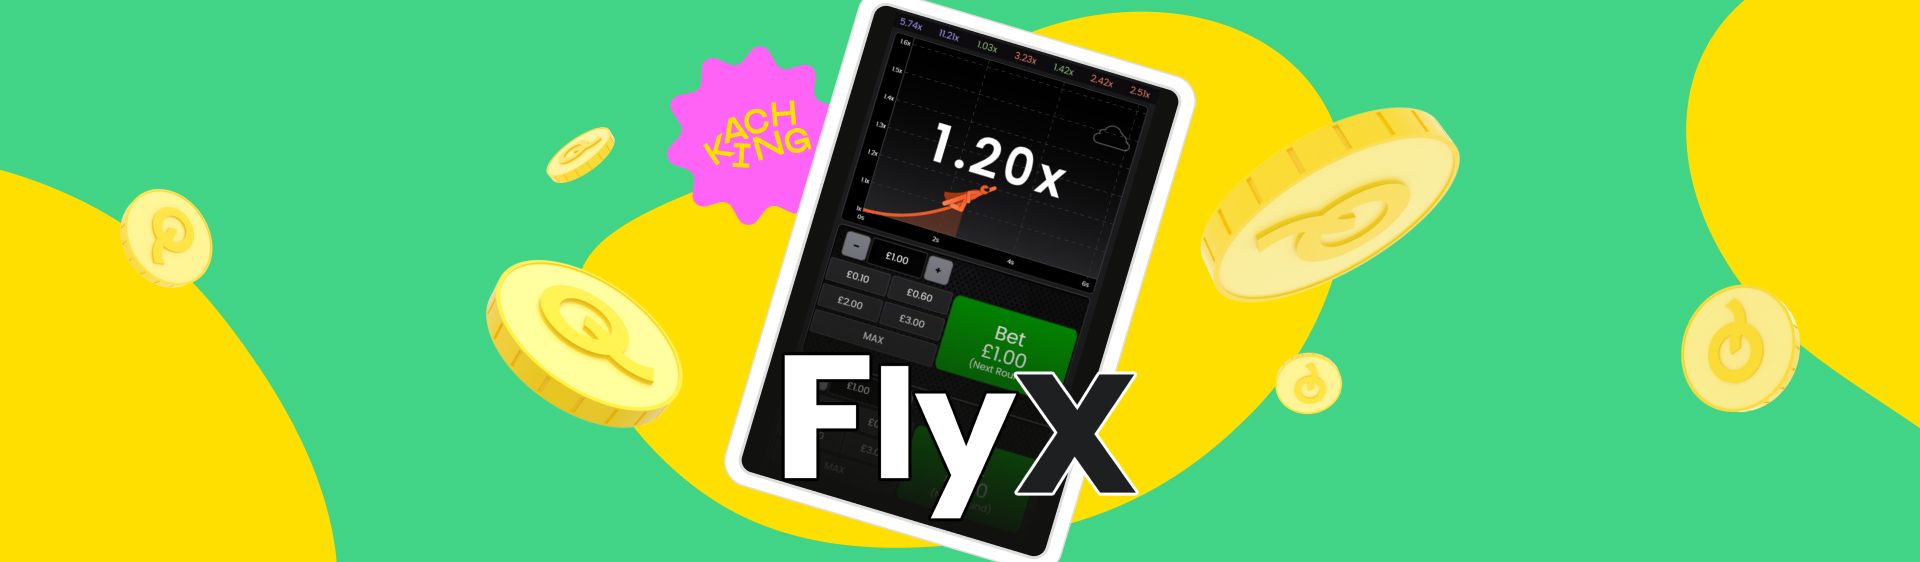 flyx-blog-header.jpg